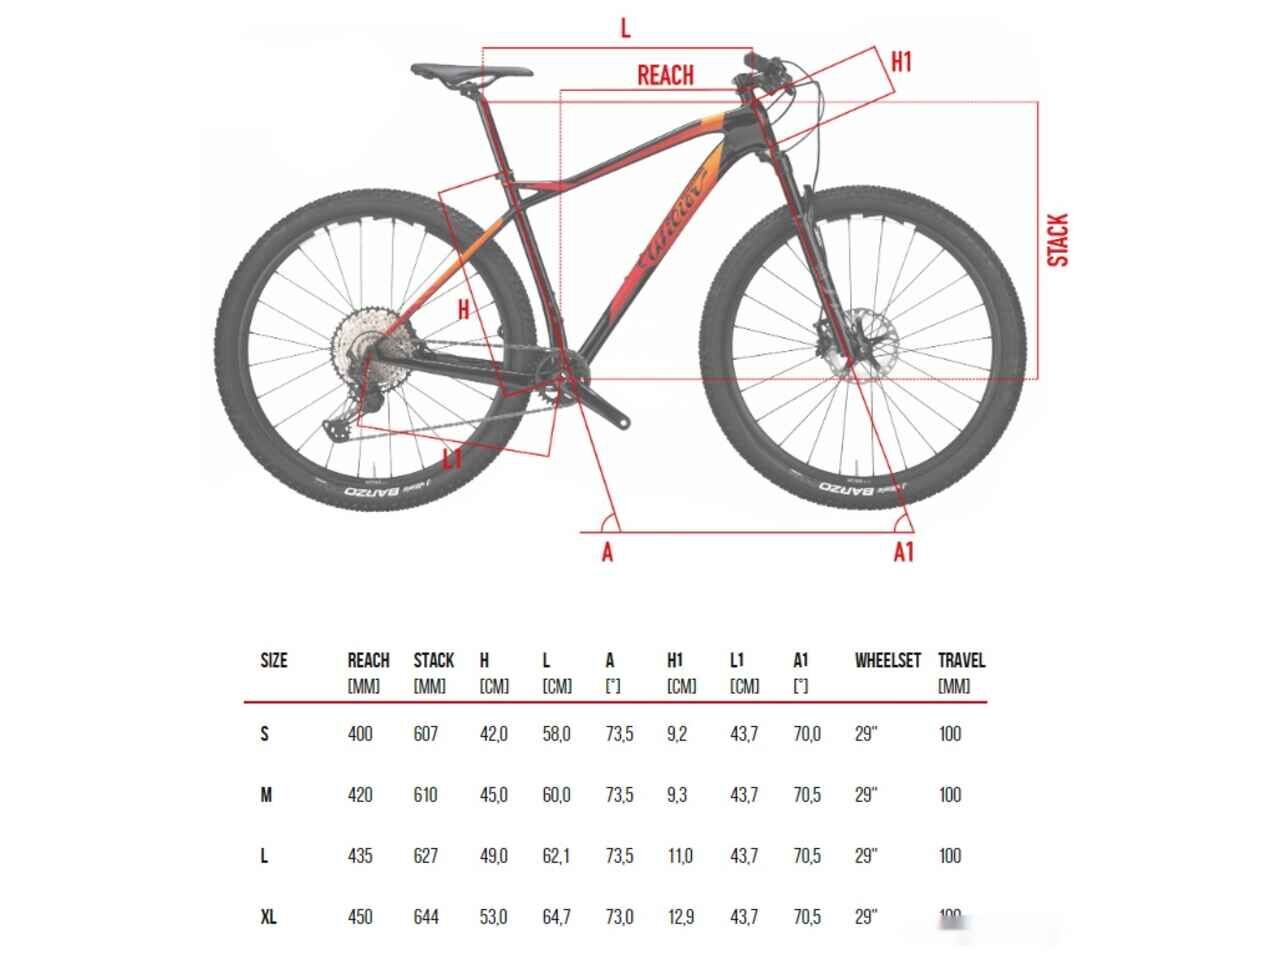 Велосипед Wilier 101X 2023 E121NCXC (Red/Black)